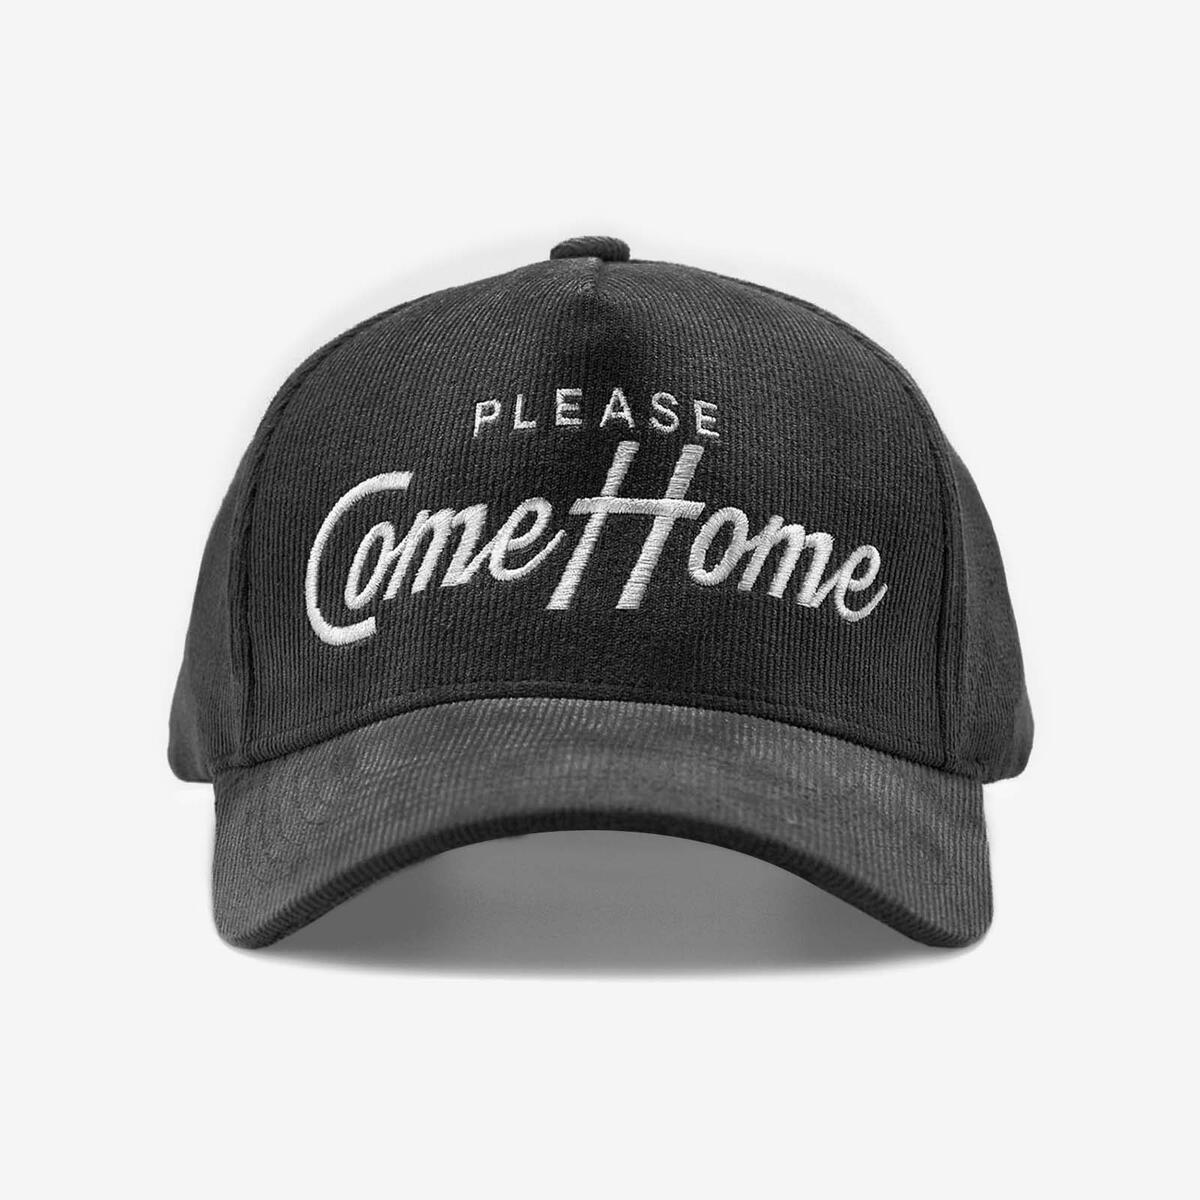 Hat - Please Come Home